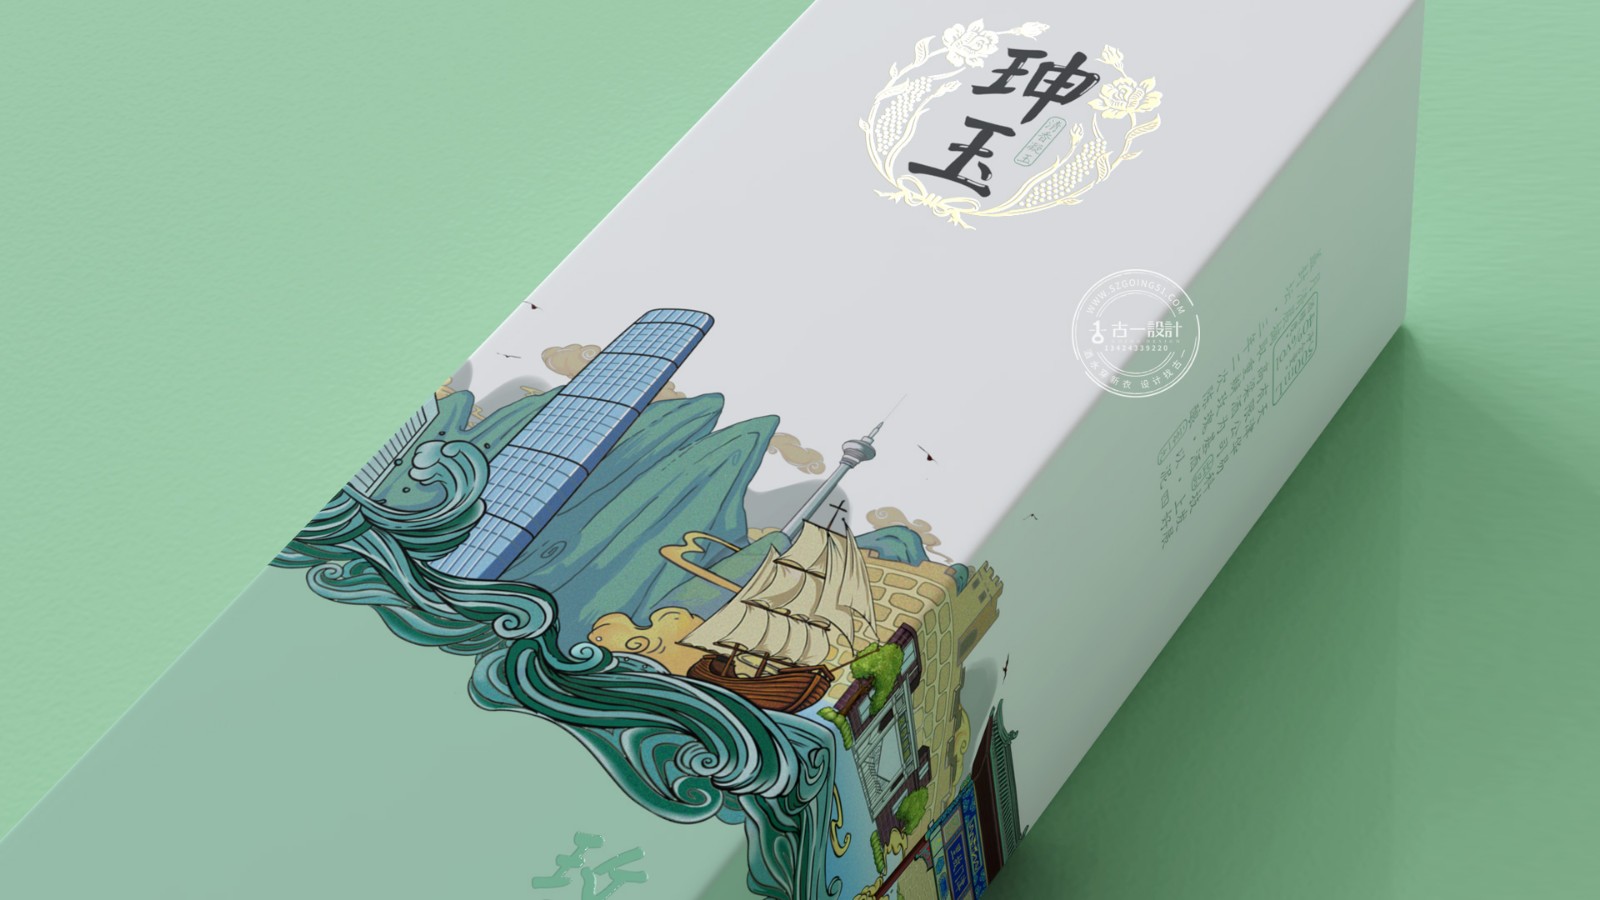 深圳酒包裝設計公司,玫瑰露酒瓶型設計,古一設計